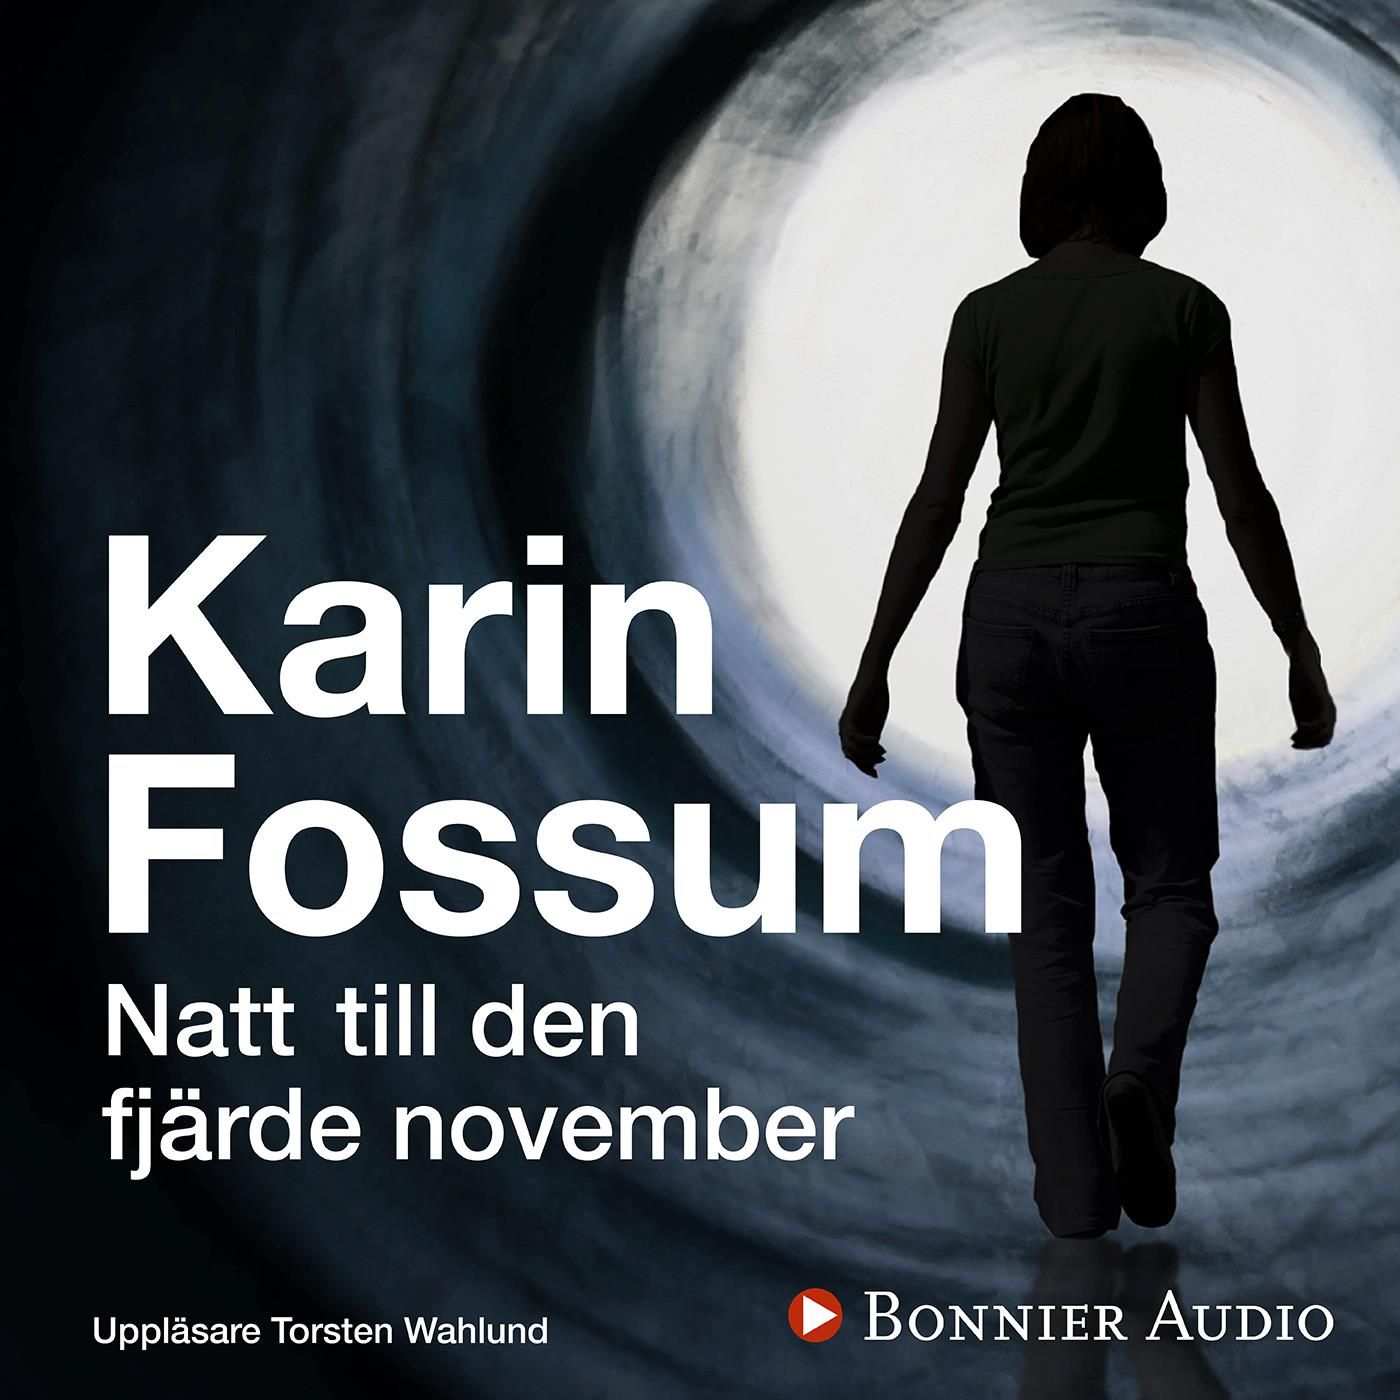 Natt till den fjärde november, ljudbok av Karin Fossum